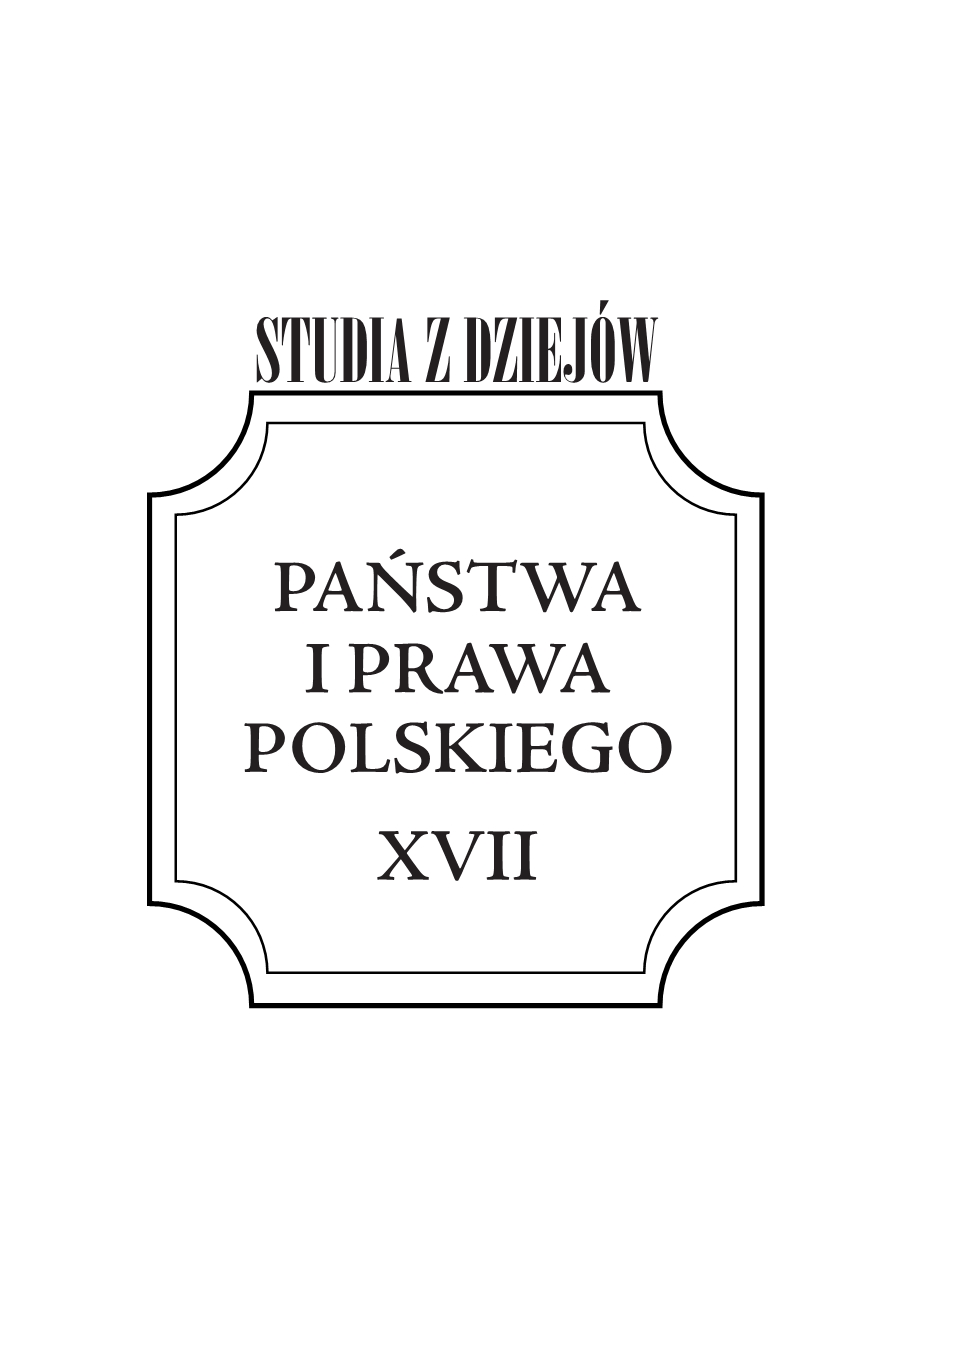 Rola urzędników w dokonywaniu zaborów dóbr ziemskich
przez panującego w średniowiecznej Polsce do połowy XV wieku